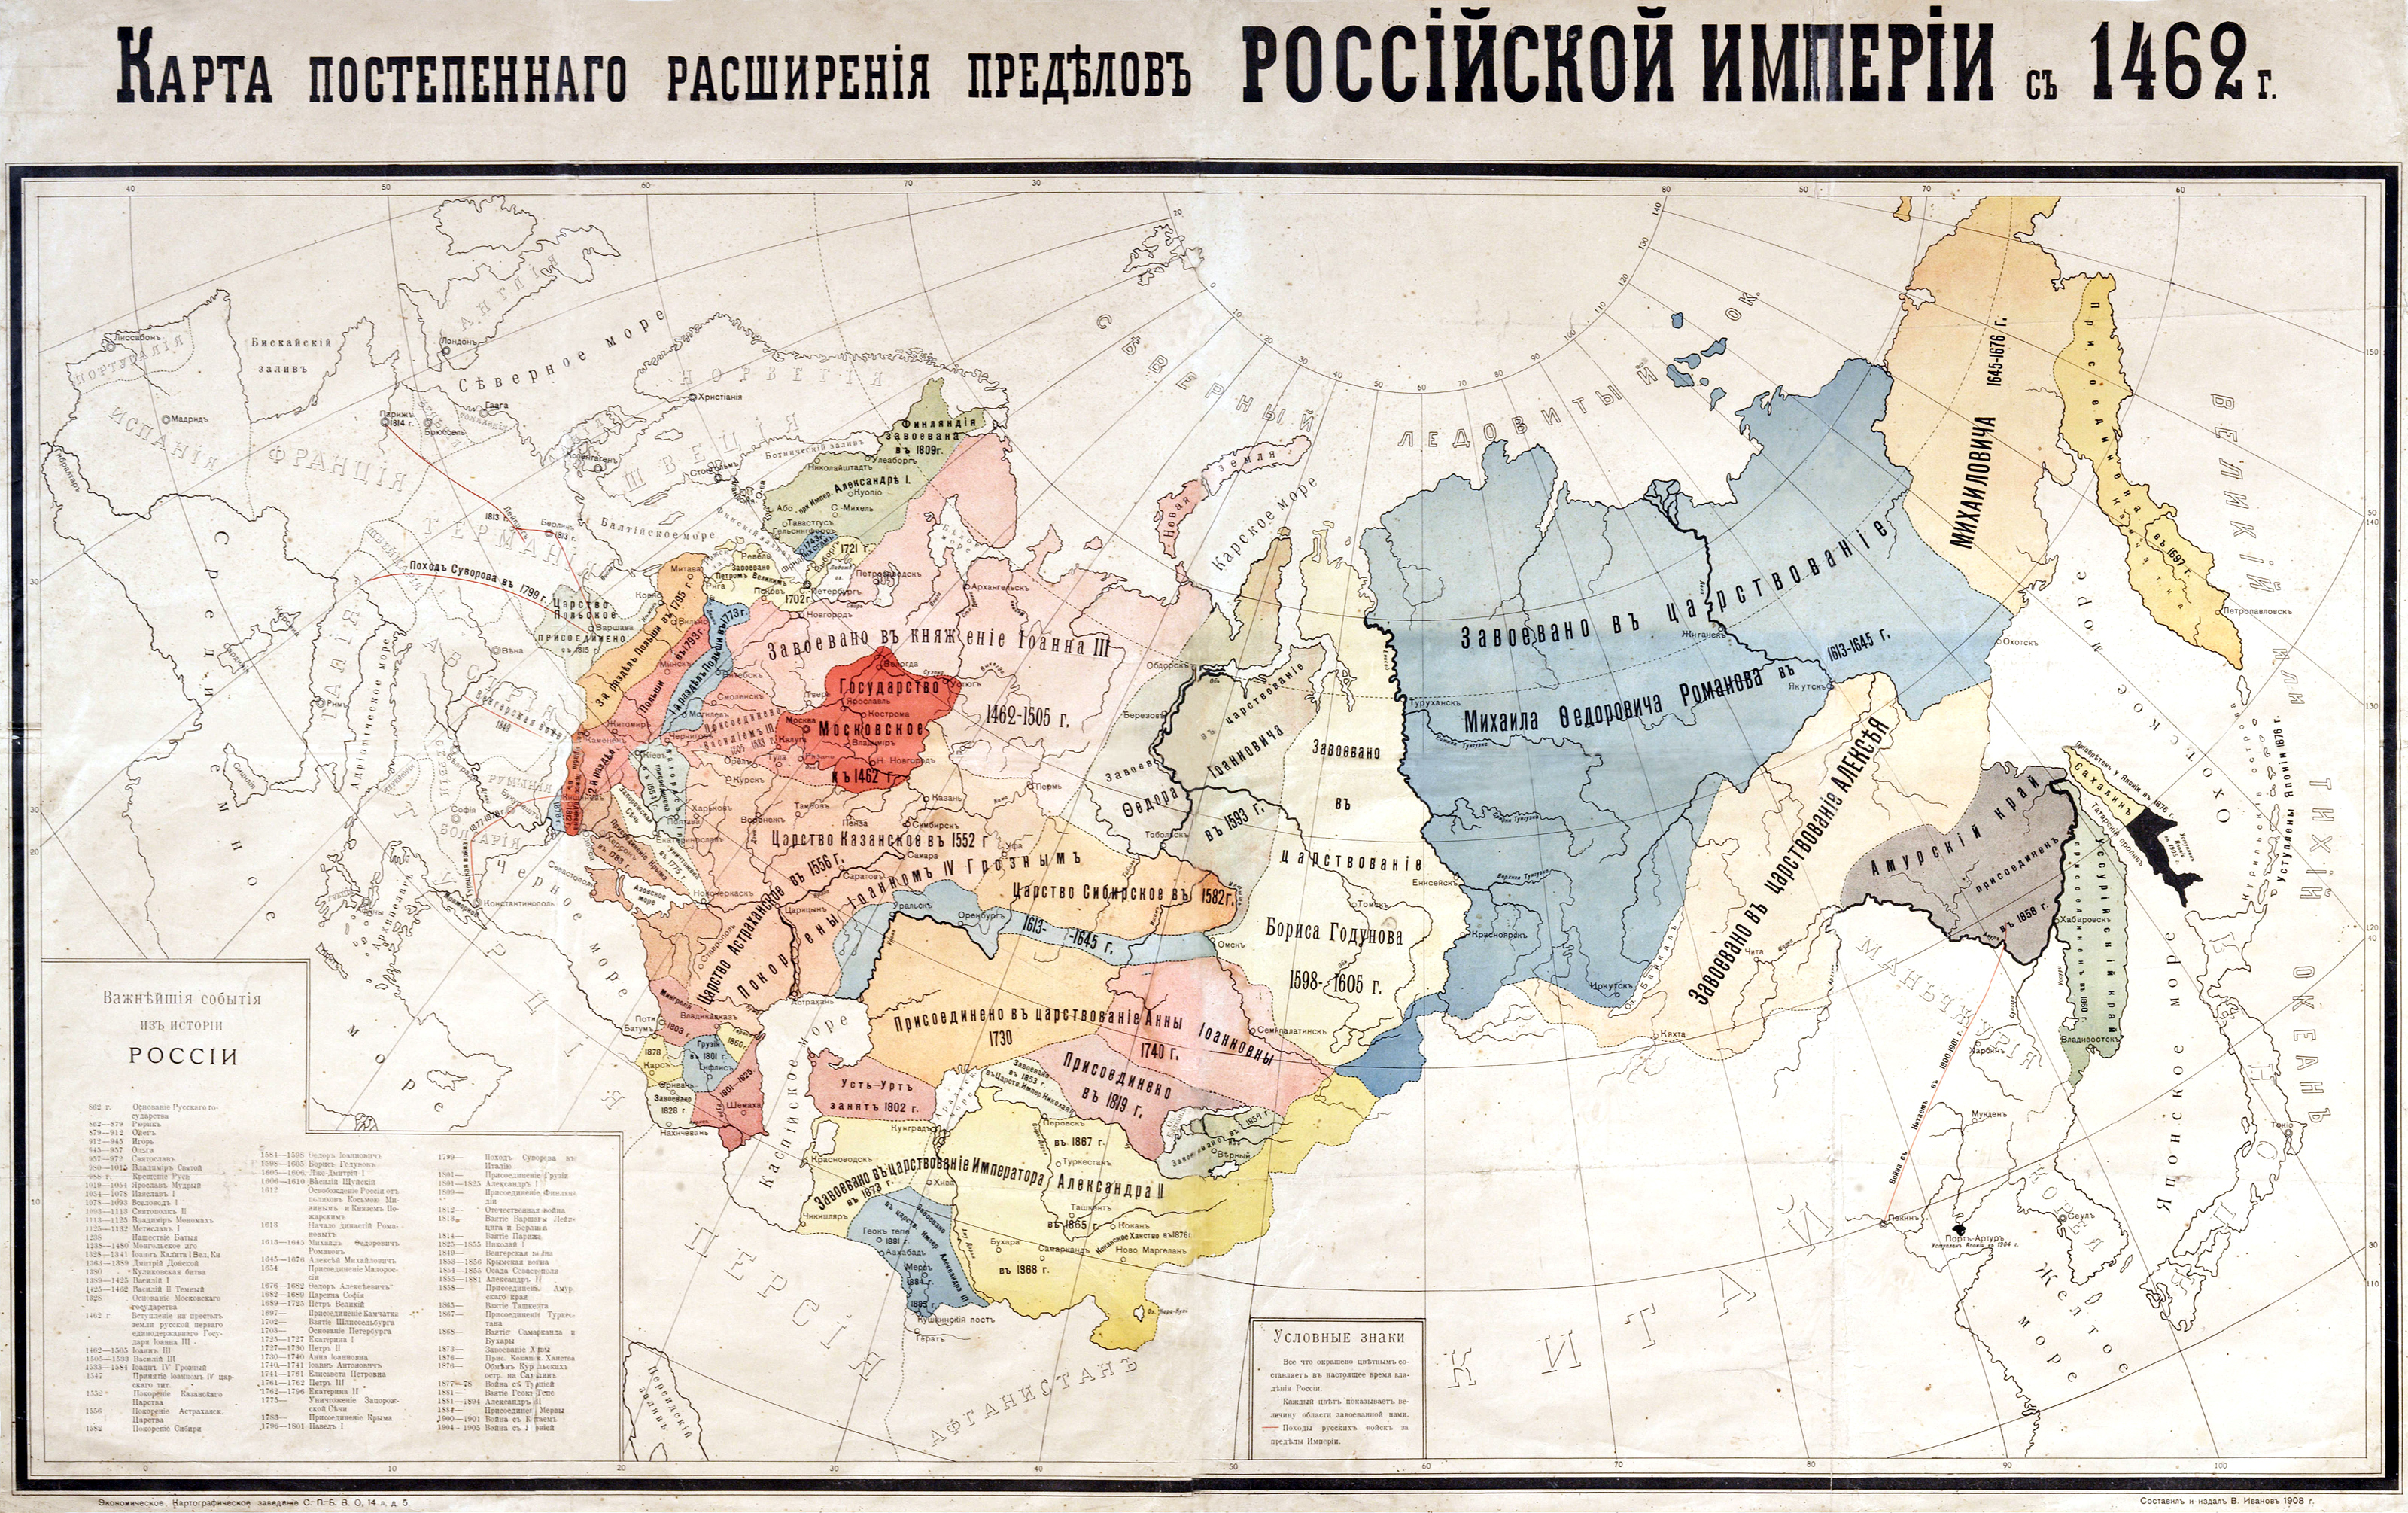 1908 год. Карта постепенного расширения пределов Российской Империи с 1462 года